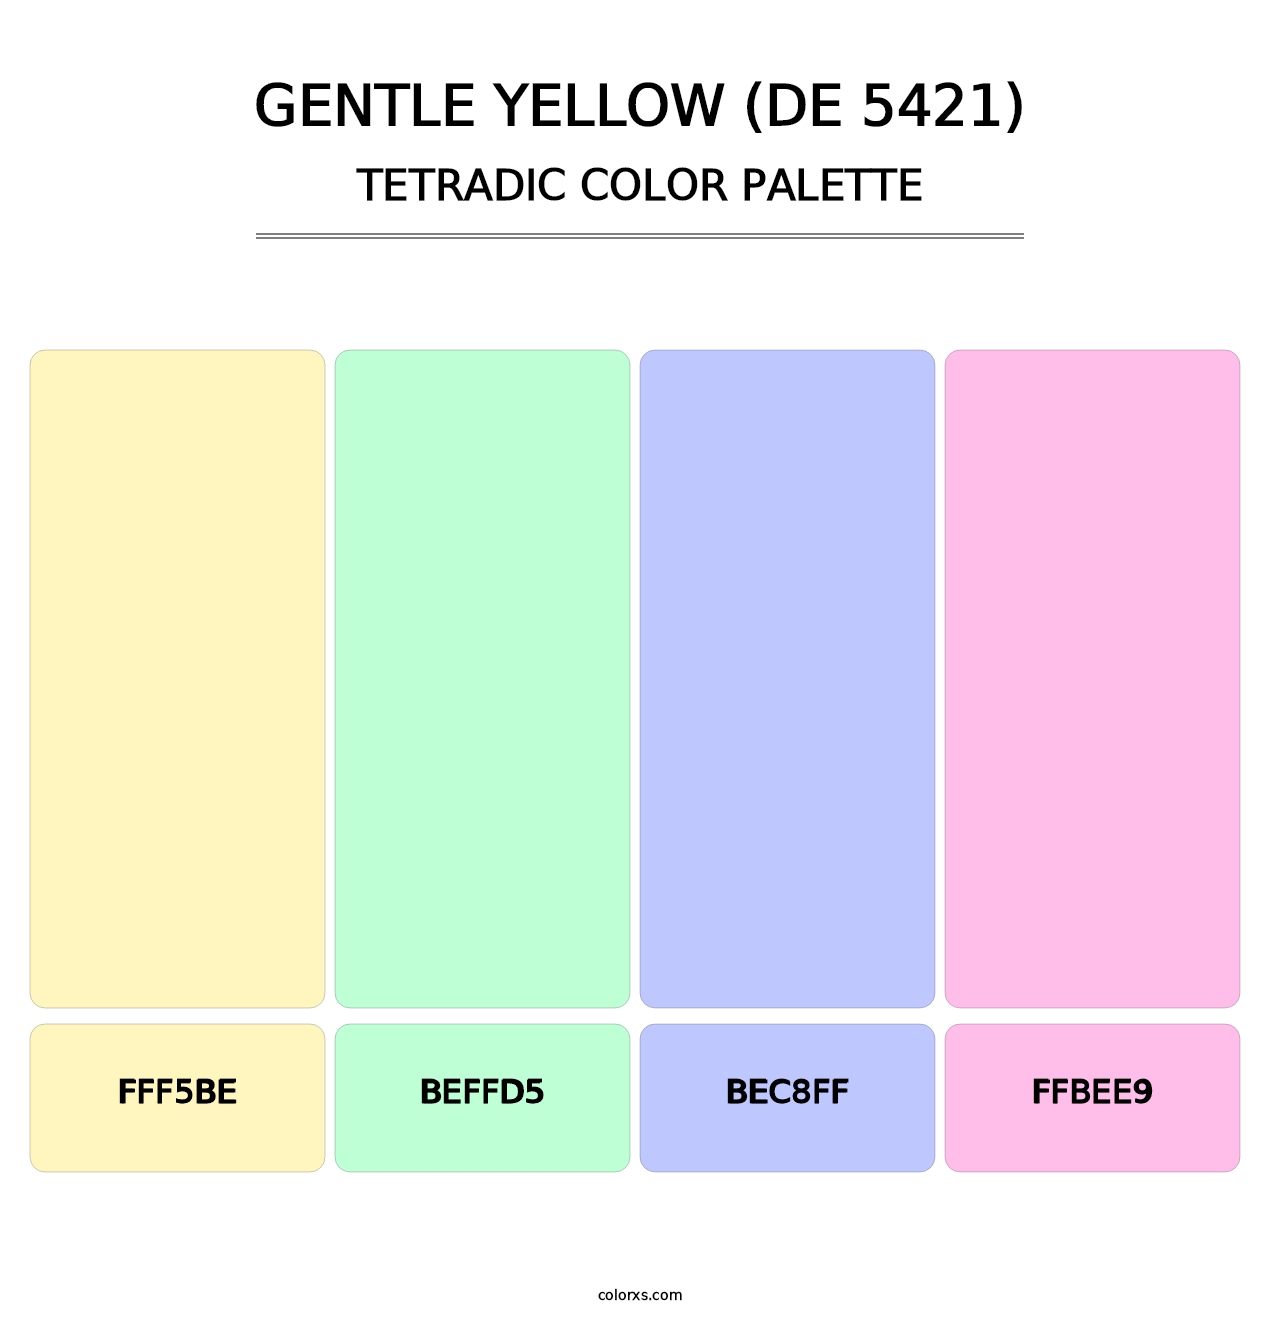 Gentle Yellow (DE 5421) - Tetradic Color Palette